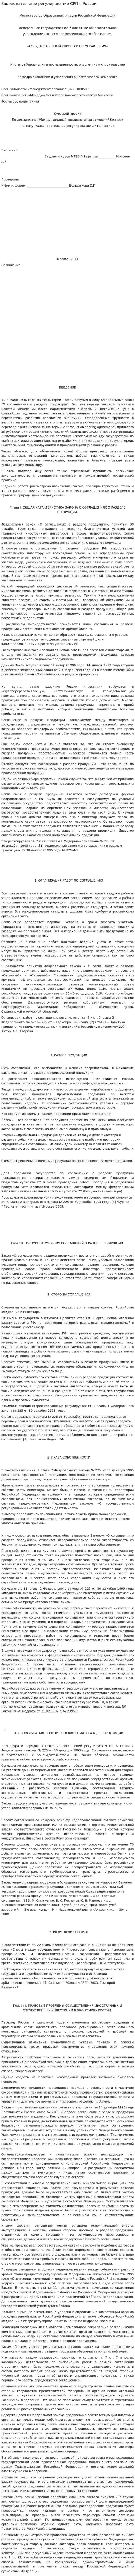 Законодательное регулирование СРП в России